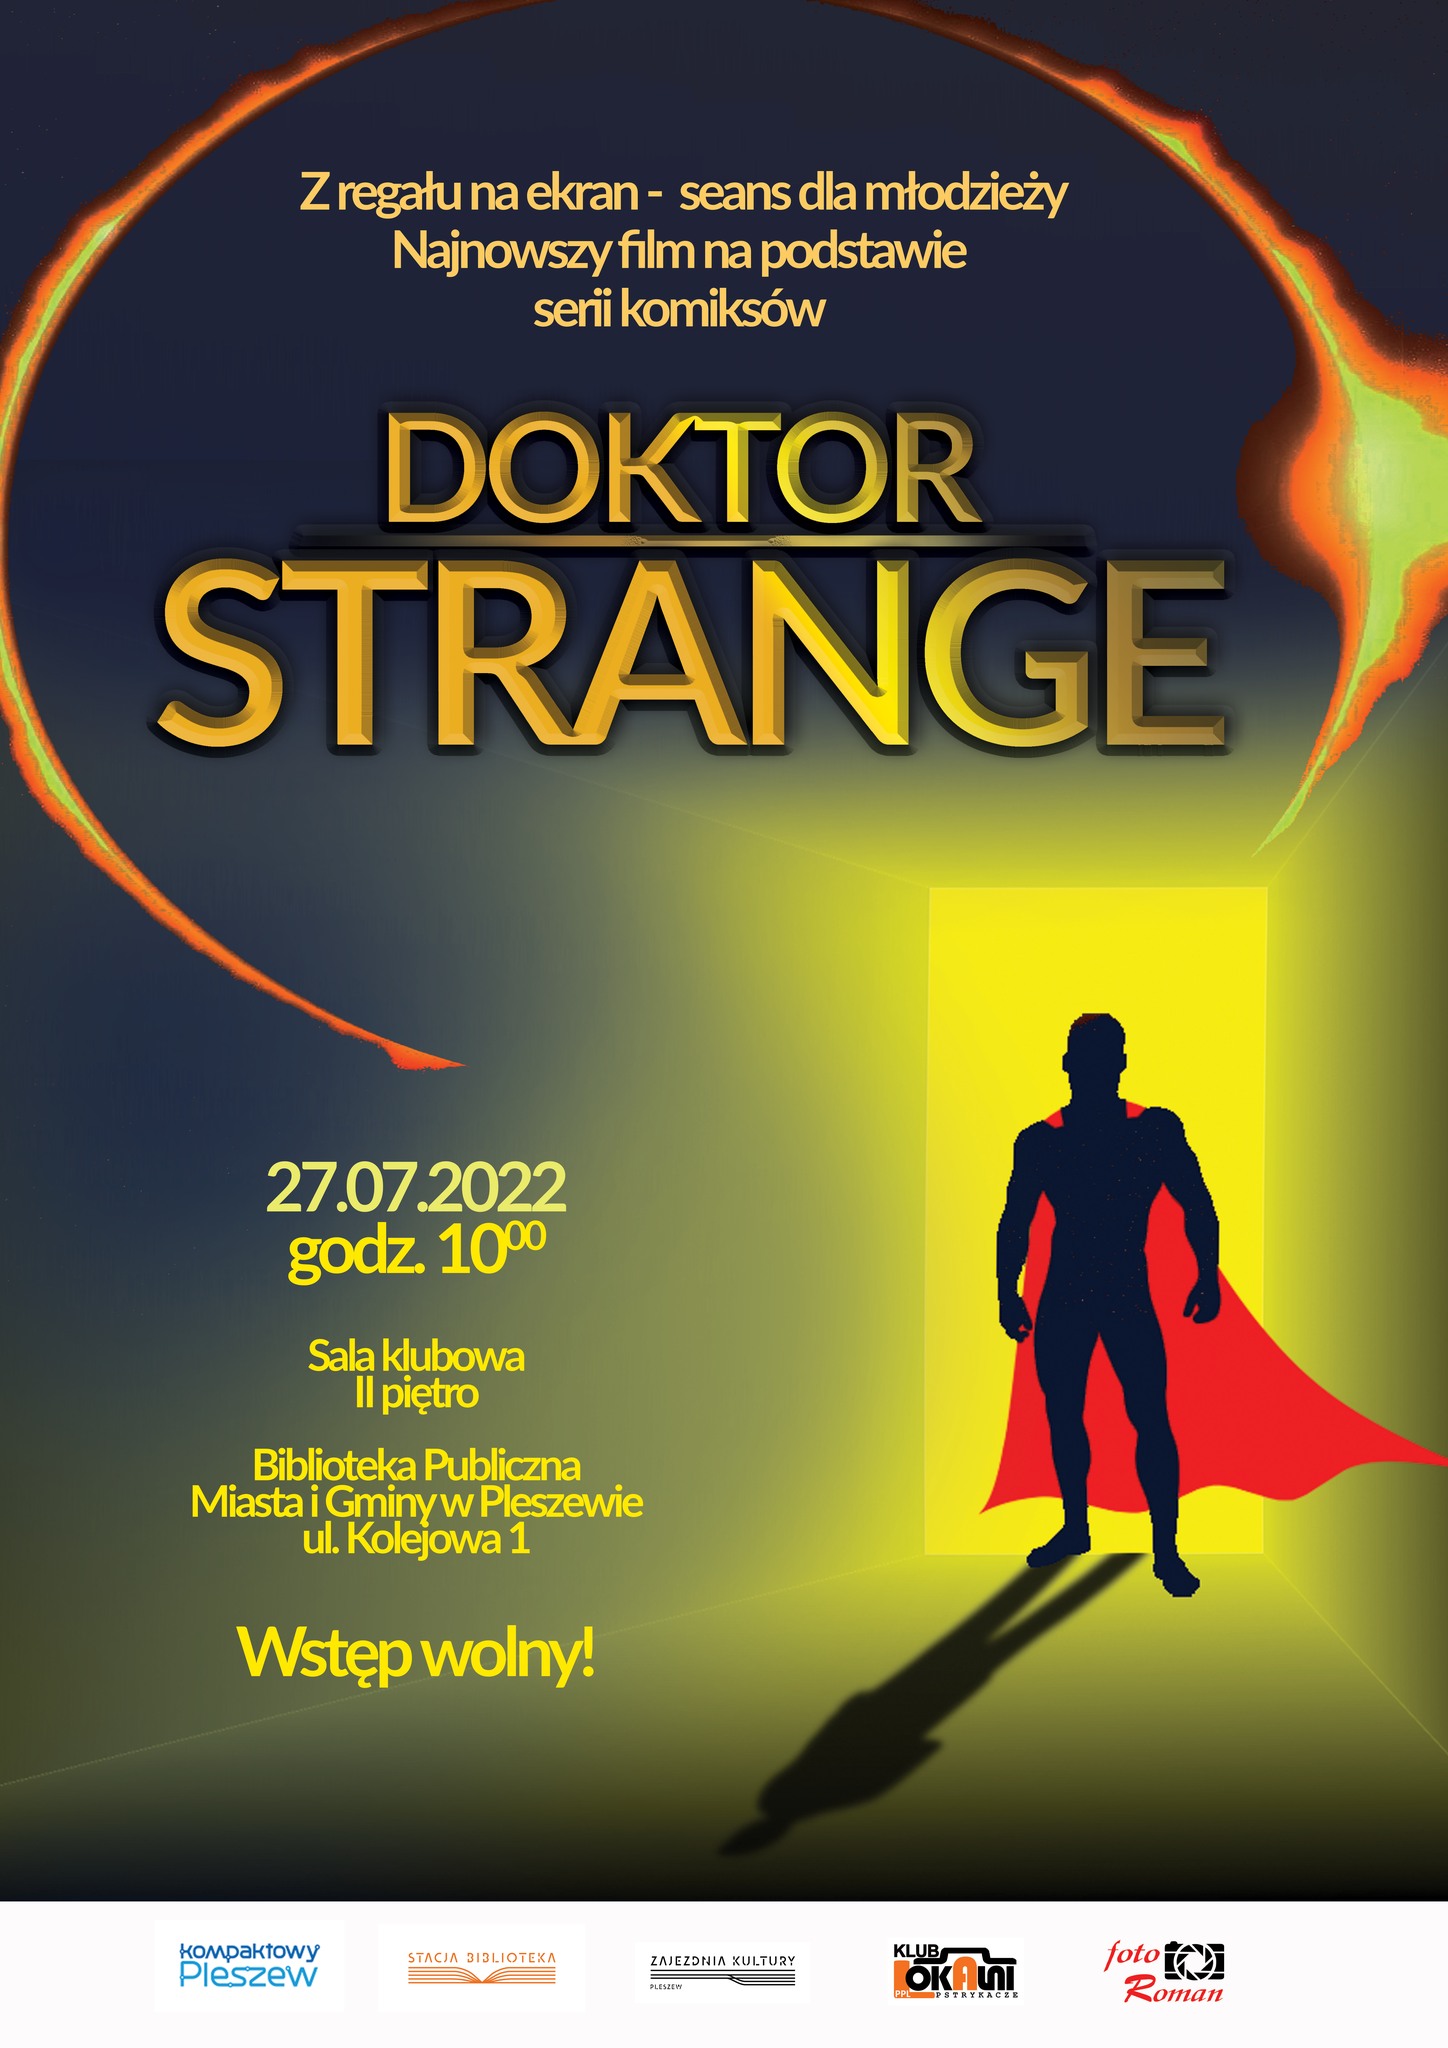 plakat wydarzenia z regału na ekran- seans dla młodzieży Doktor Strange